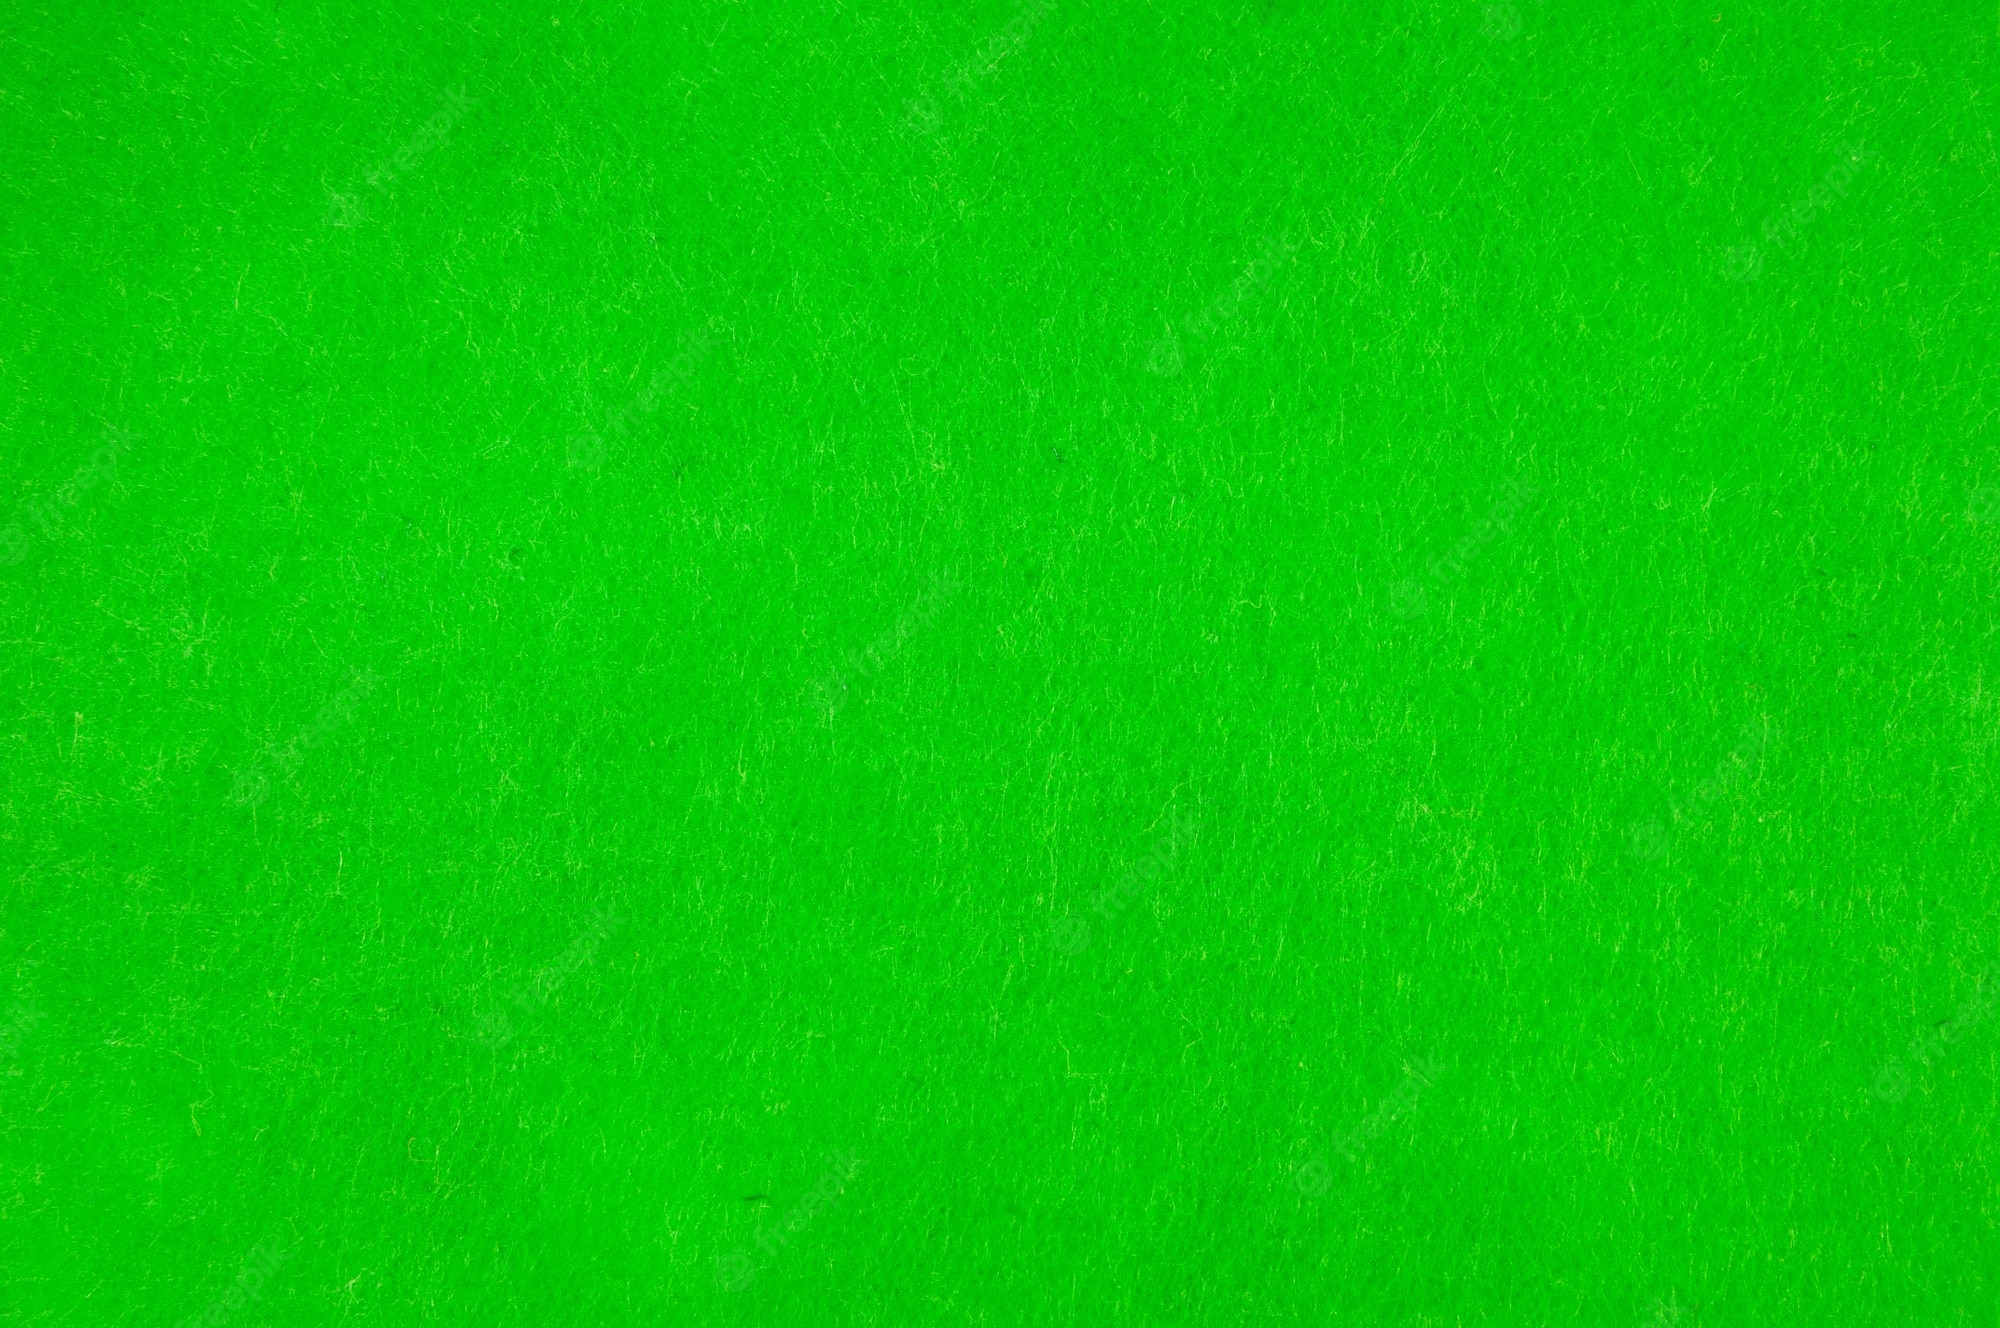 Premium Photo Texture background of dark green velvet or flannel